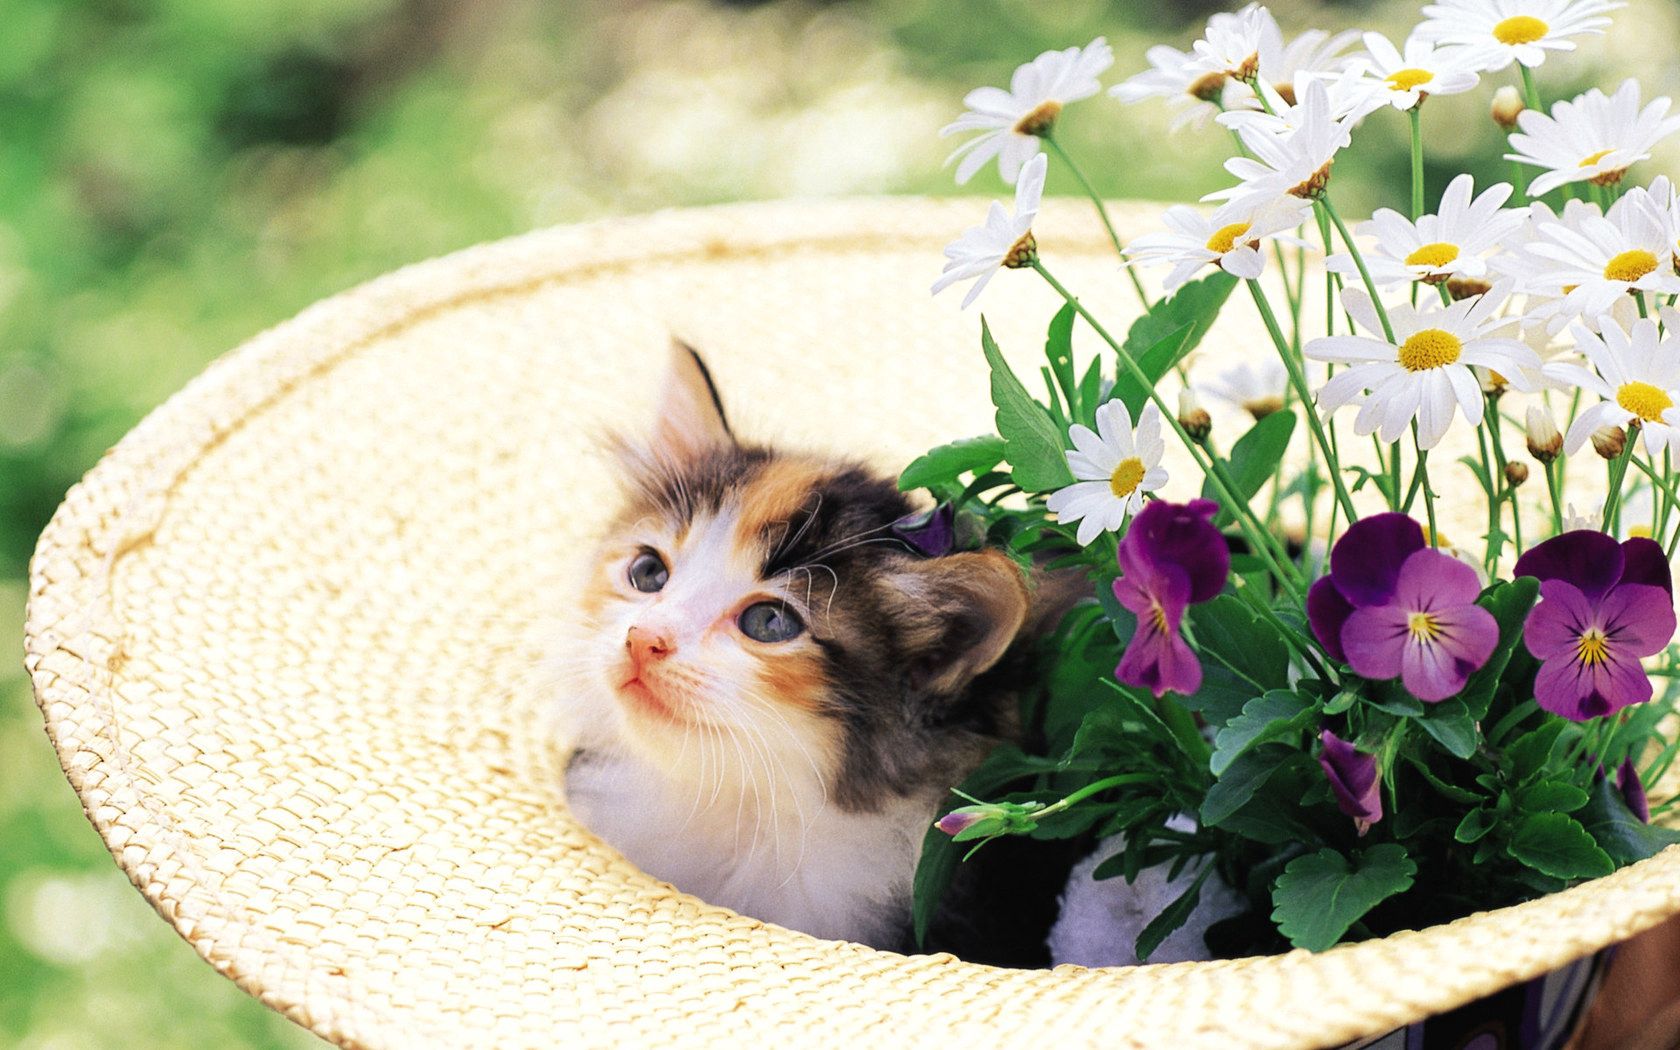 kitty, animals, grass, kitten, muzzle, hat Free Stock Photo